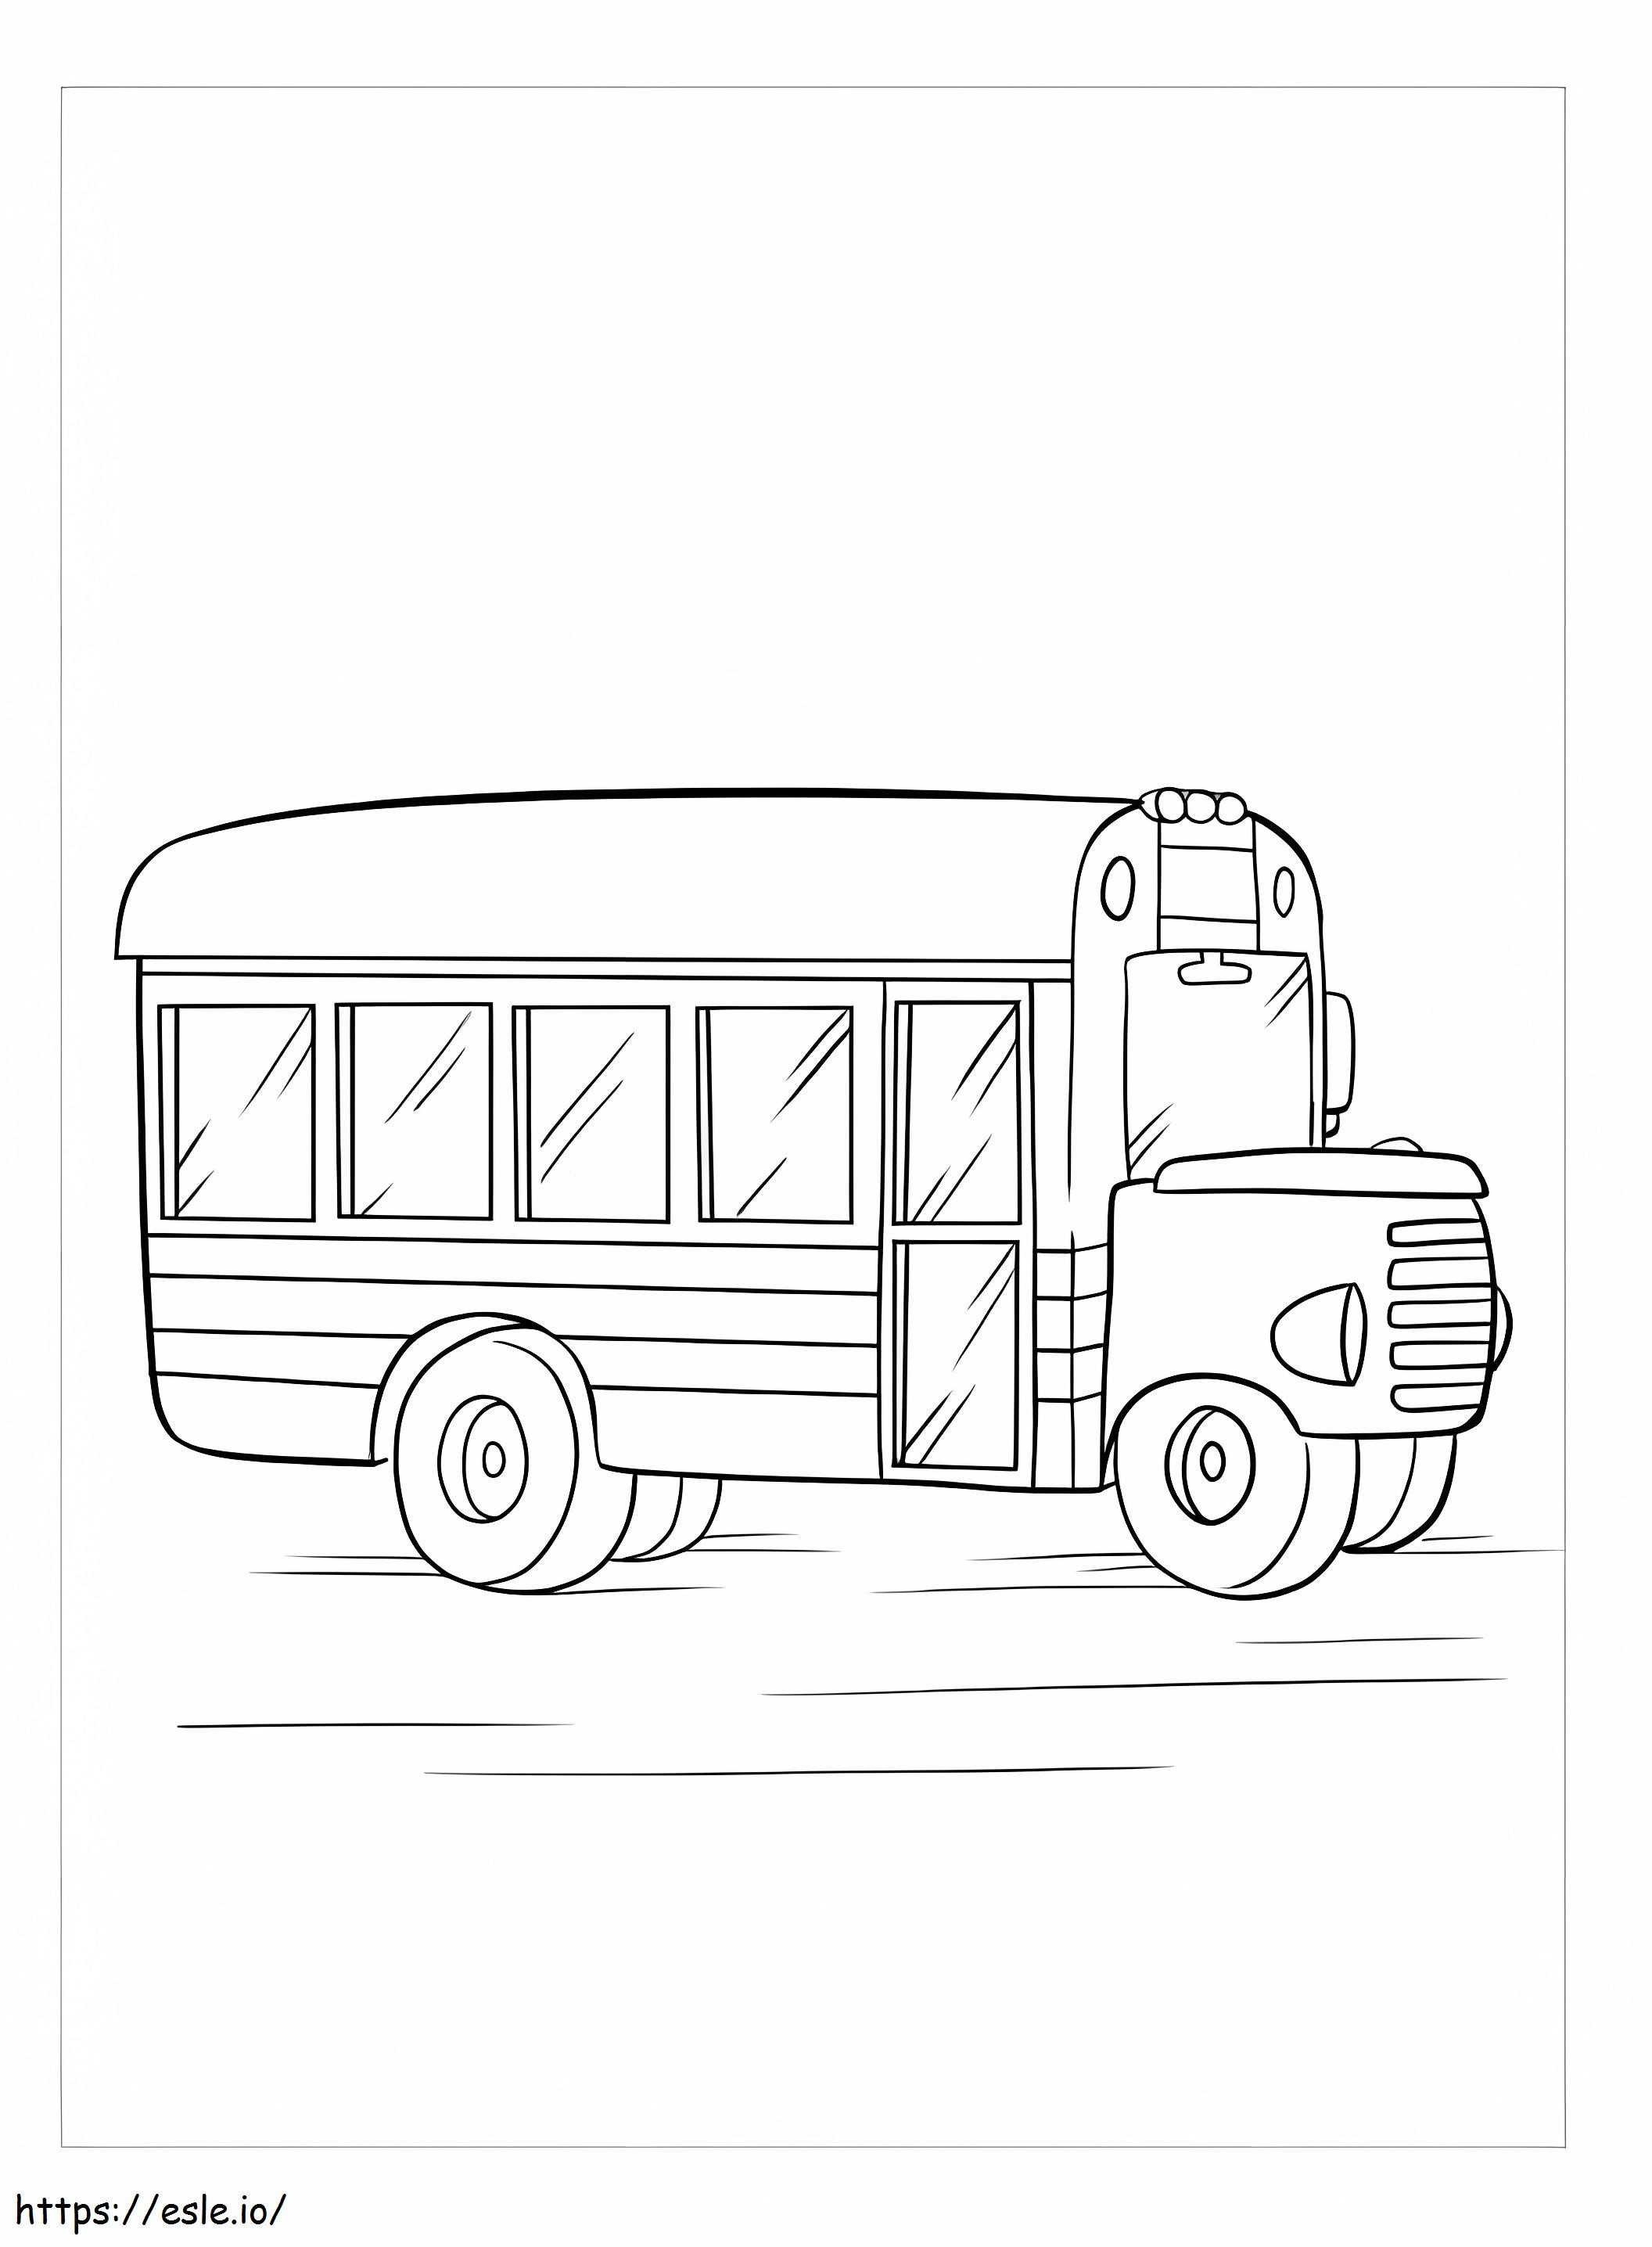 Sevimli Okul Otobüsü boyama